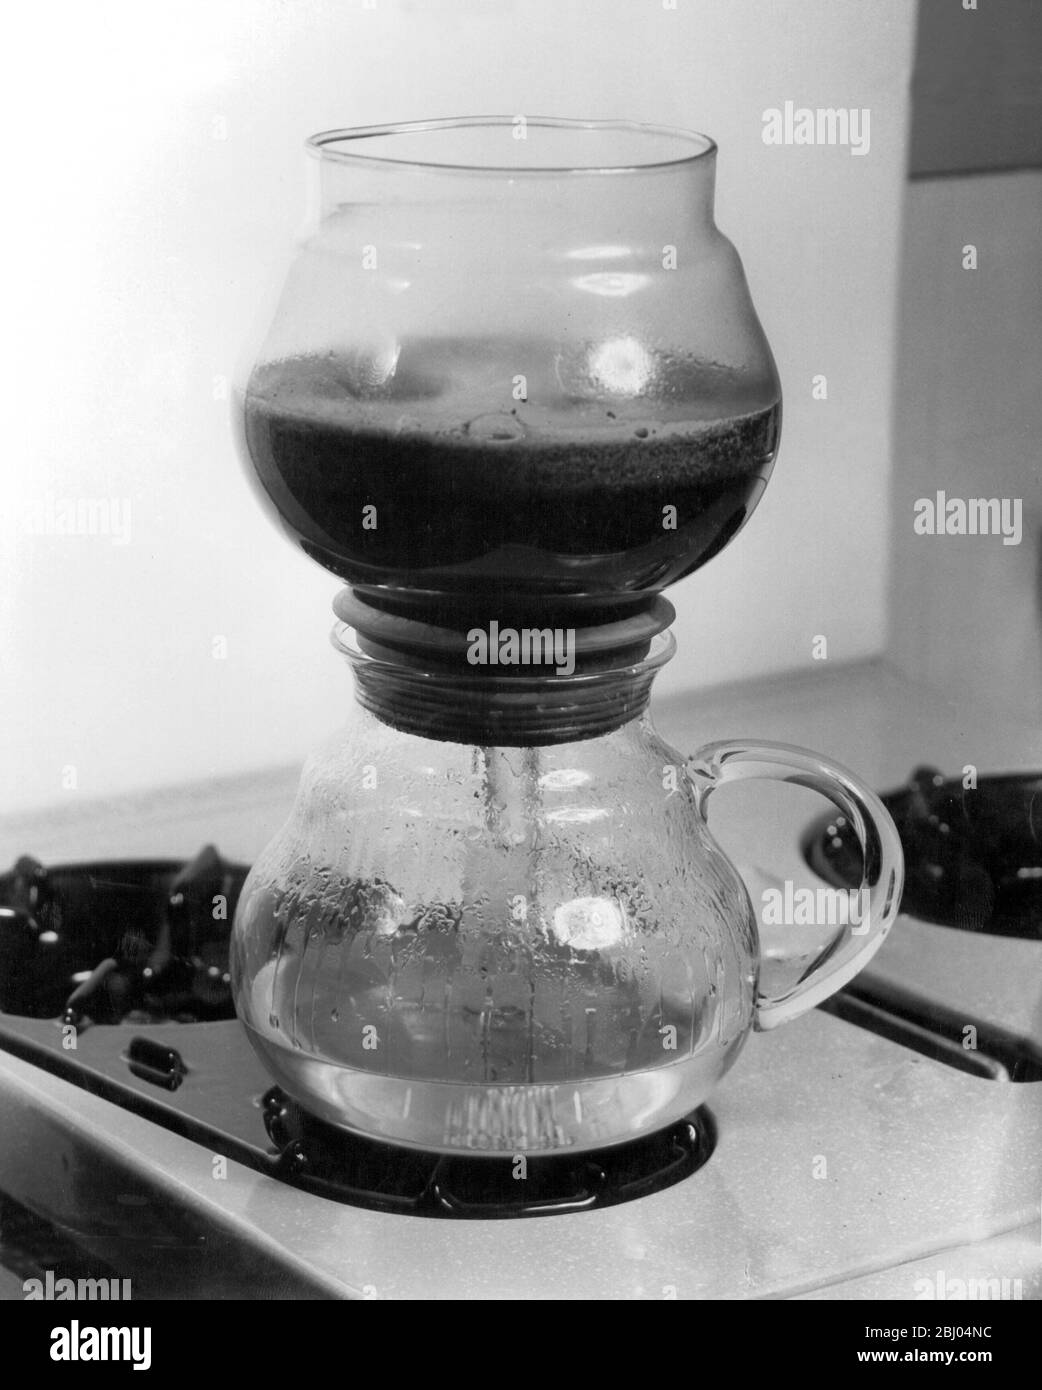 La cafetière des années 1950 - tandis que l'eau chauffe, elle force son chemin dans le bol supérieur. L'eau sous l'extrémité du verre reste dans la verseuse et empêche ainsi la verseuse d'ébullition et d'endommager le verre. Banque D'Images